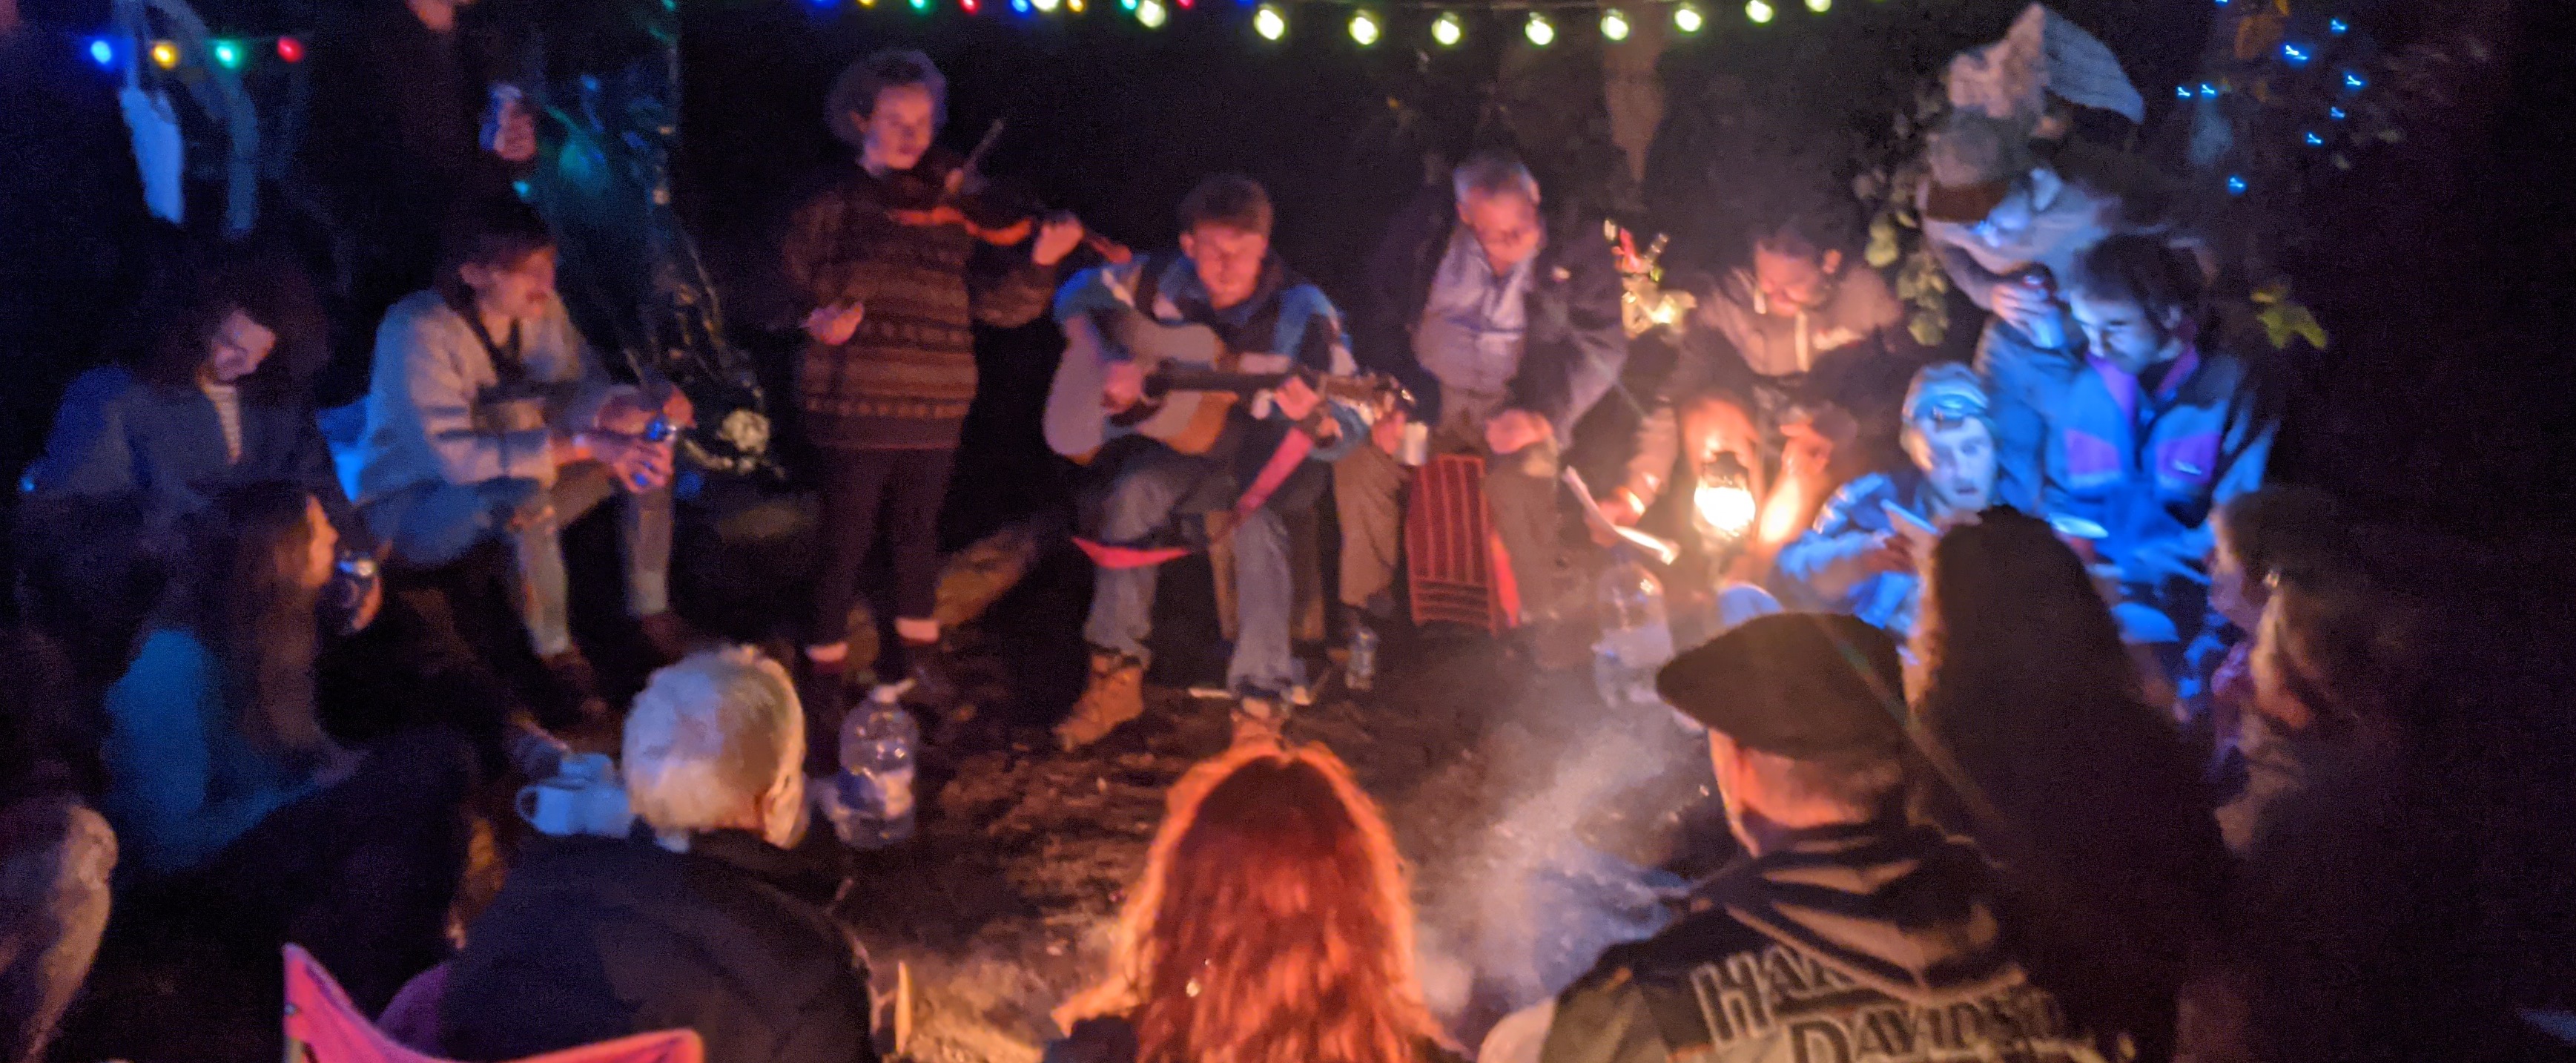 Hippies around a campfire